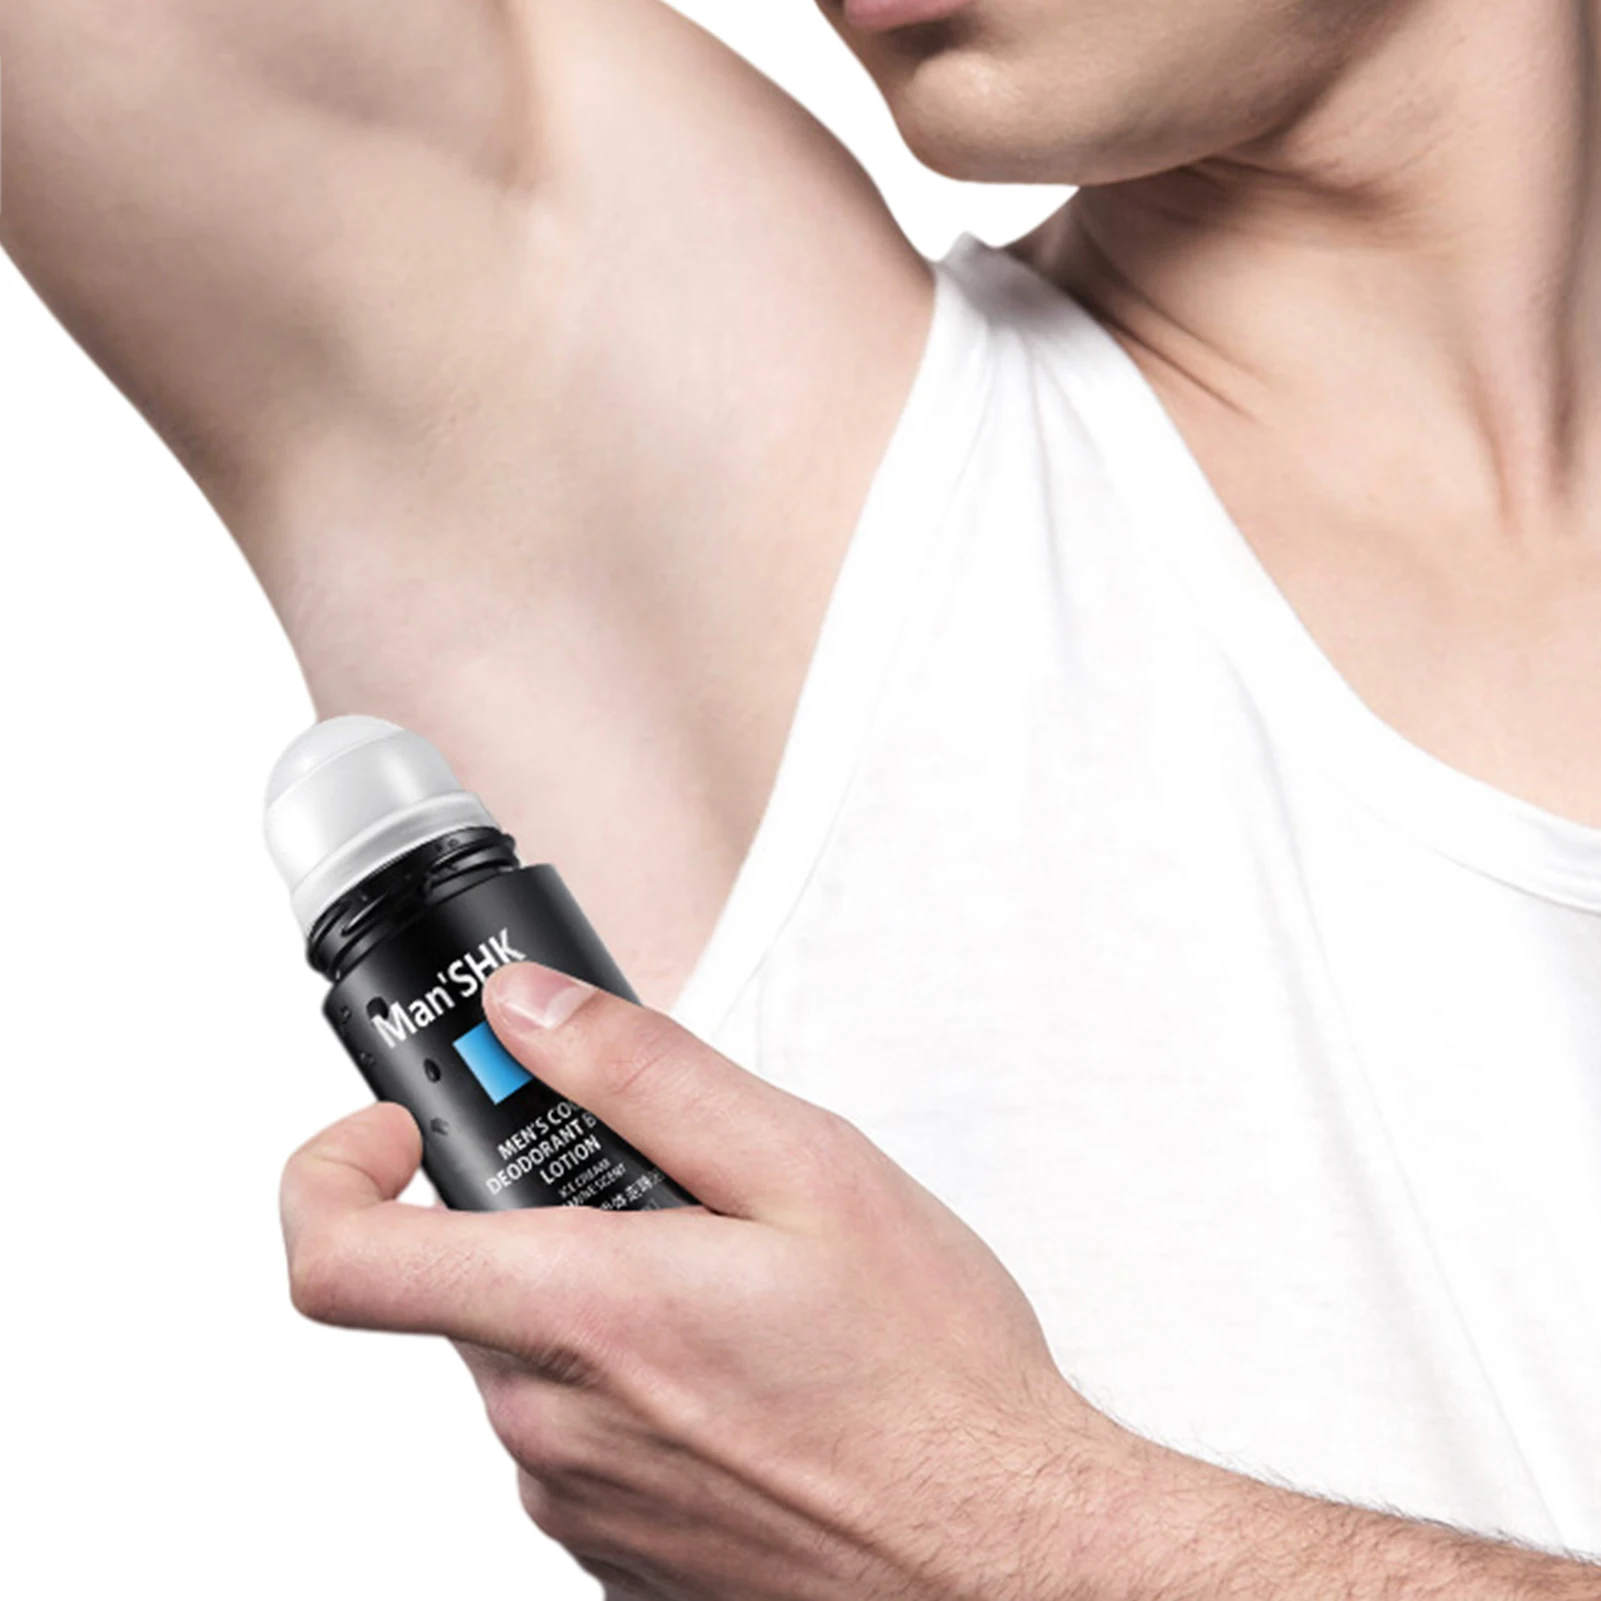 Men Antiperspirant Ice Cream Scent Anti Sweat Deodorant Roll-on Deodorant Ice Cream Scent Protects From Excessive Sweat Odor